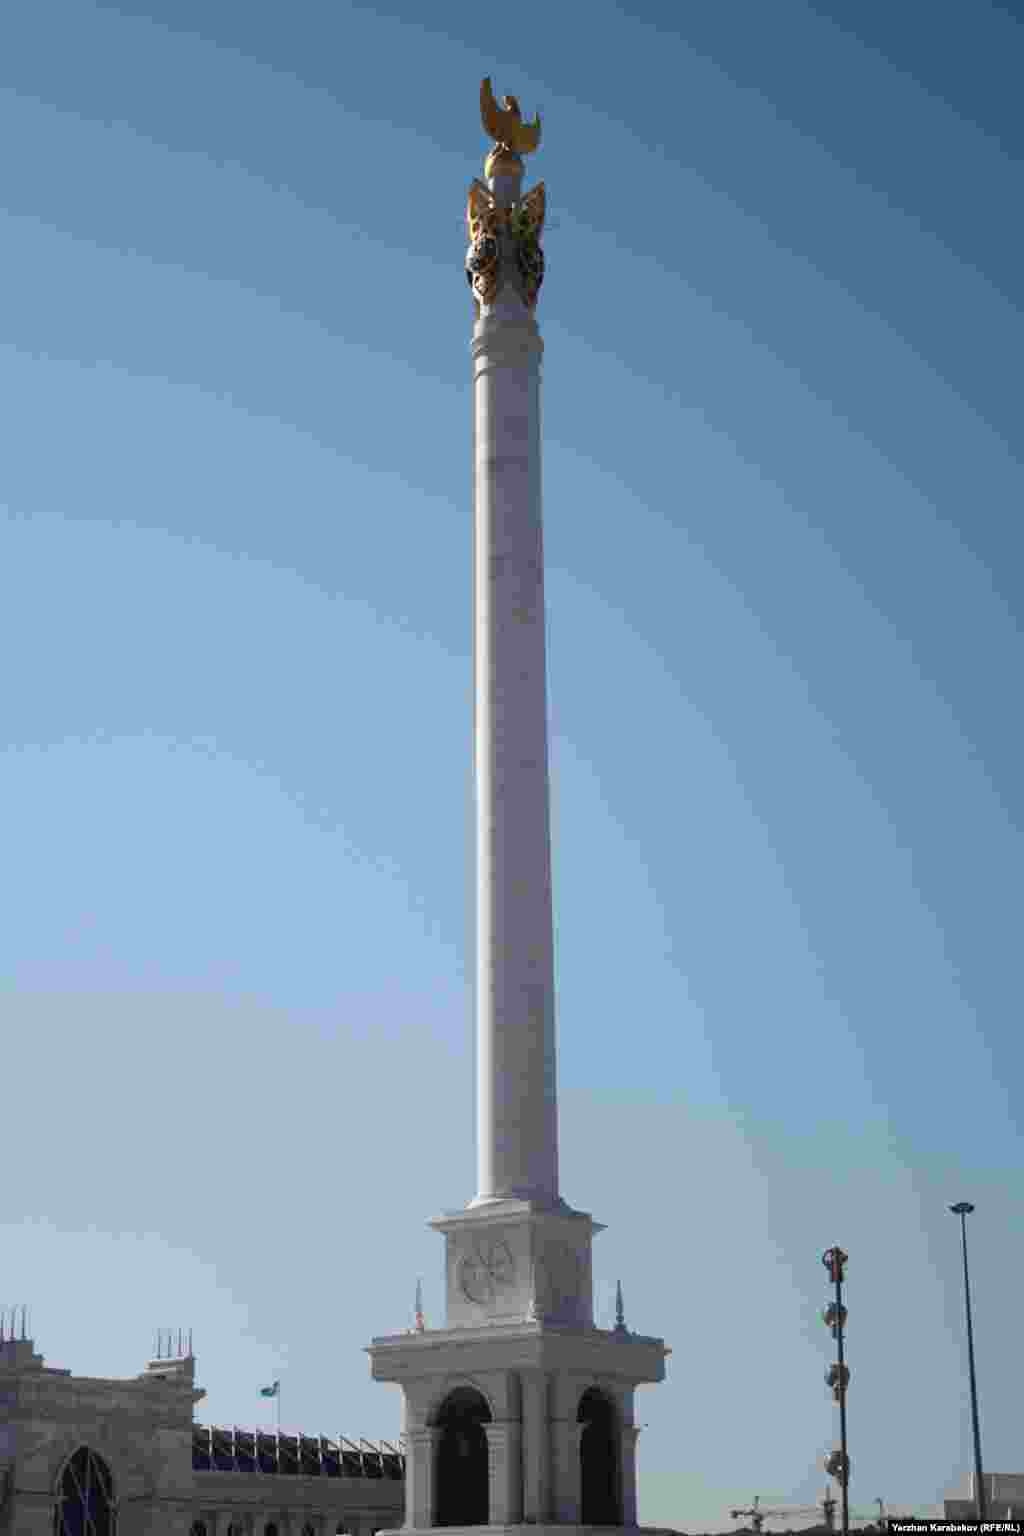 Монумент &laquo;Казах ели&raquo; (Казахский народ) в центре столицы. Высота монумента составляет 91 метр, что символизирует 1991 год, когда Казахстан объявил себя независимым государством. Архитектурно-скульптурный комплекс &laquo;Казах ели&raquo; был открыт в октябре 2009 года. Астана, 4 июня 2015 года.